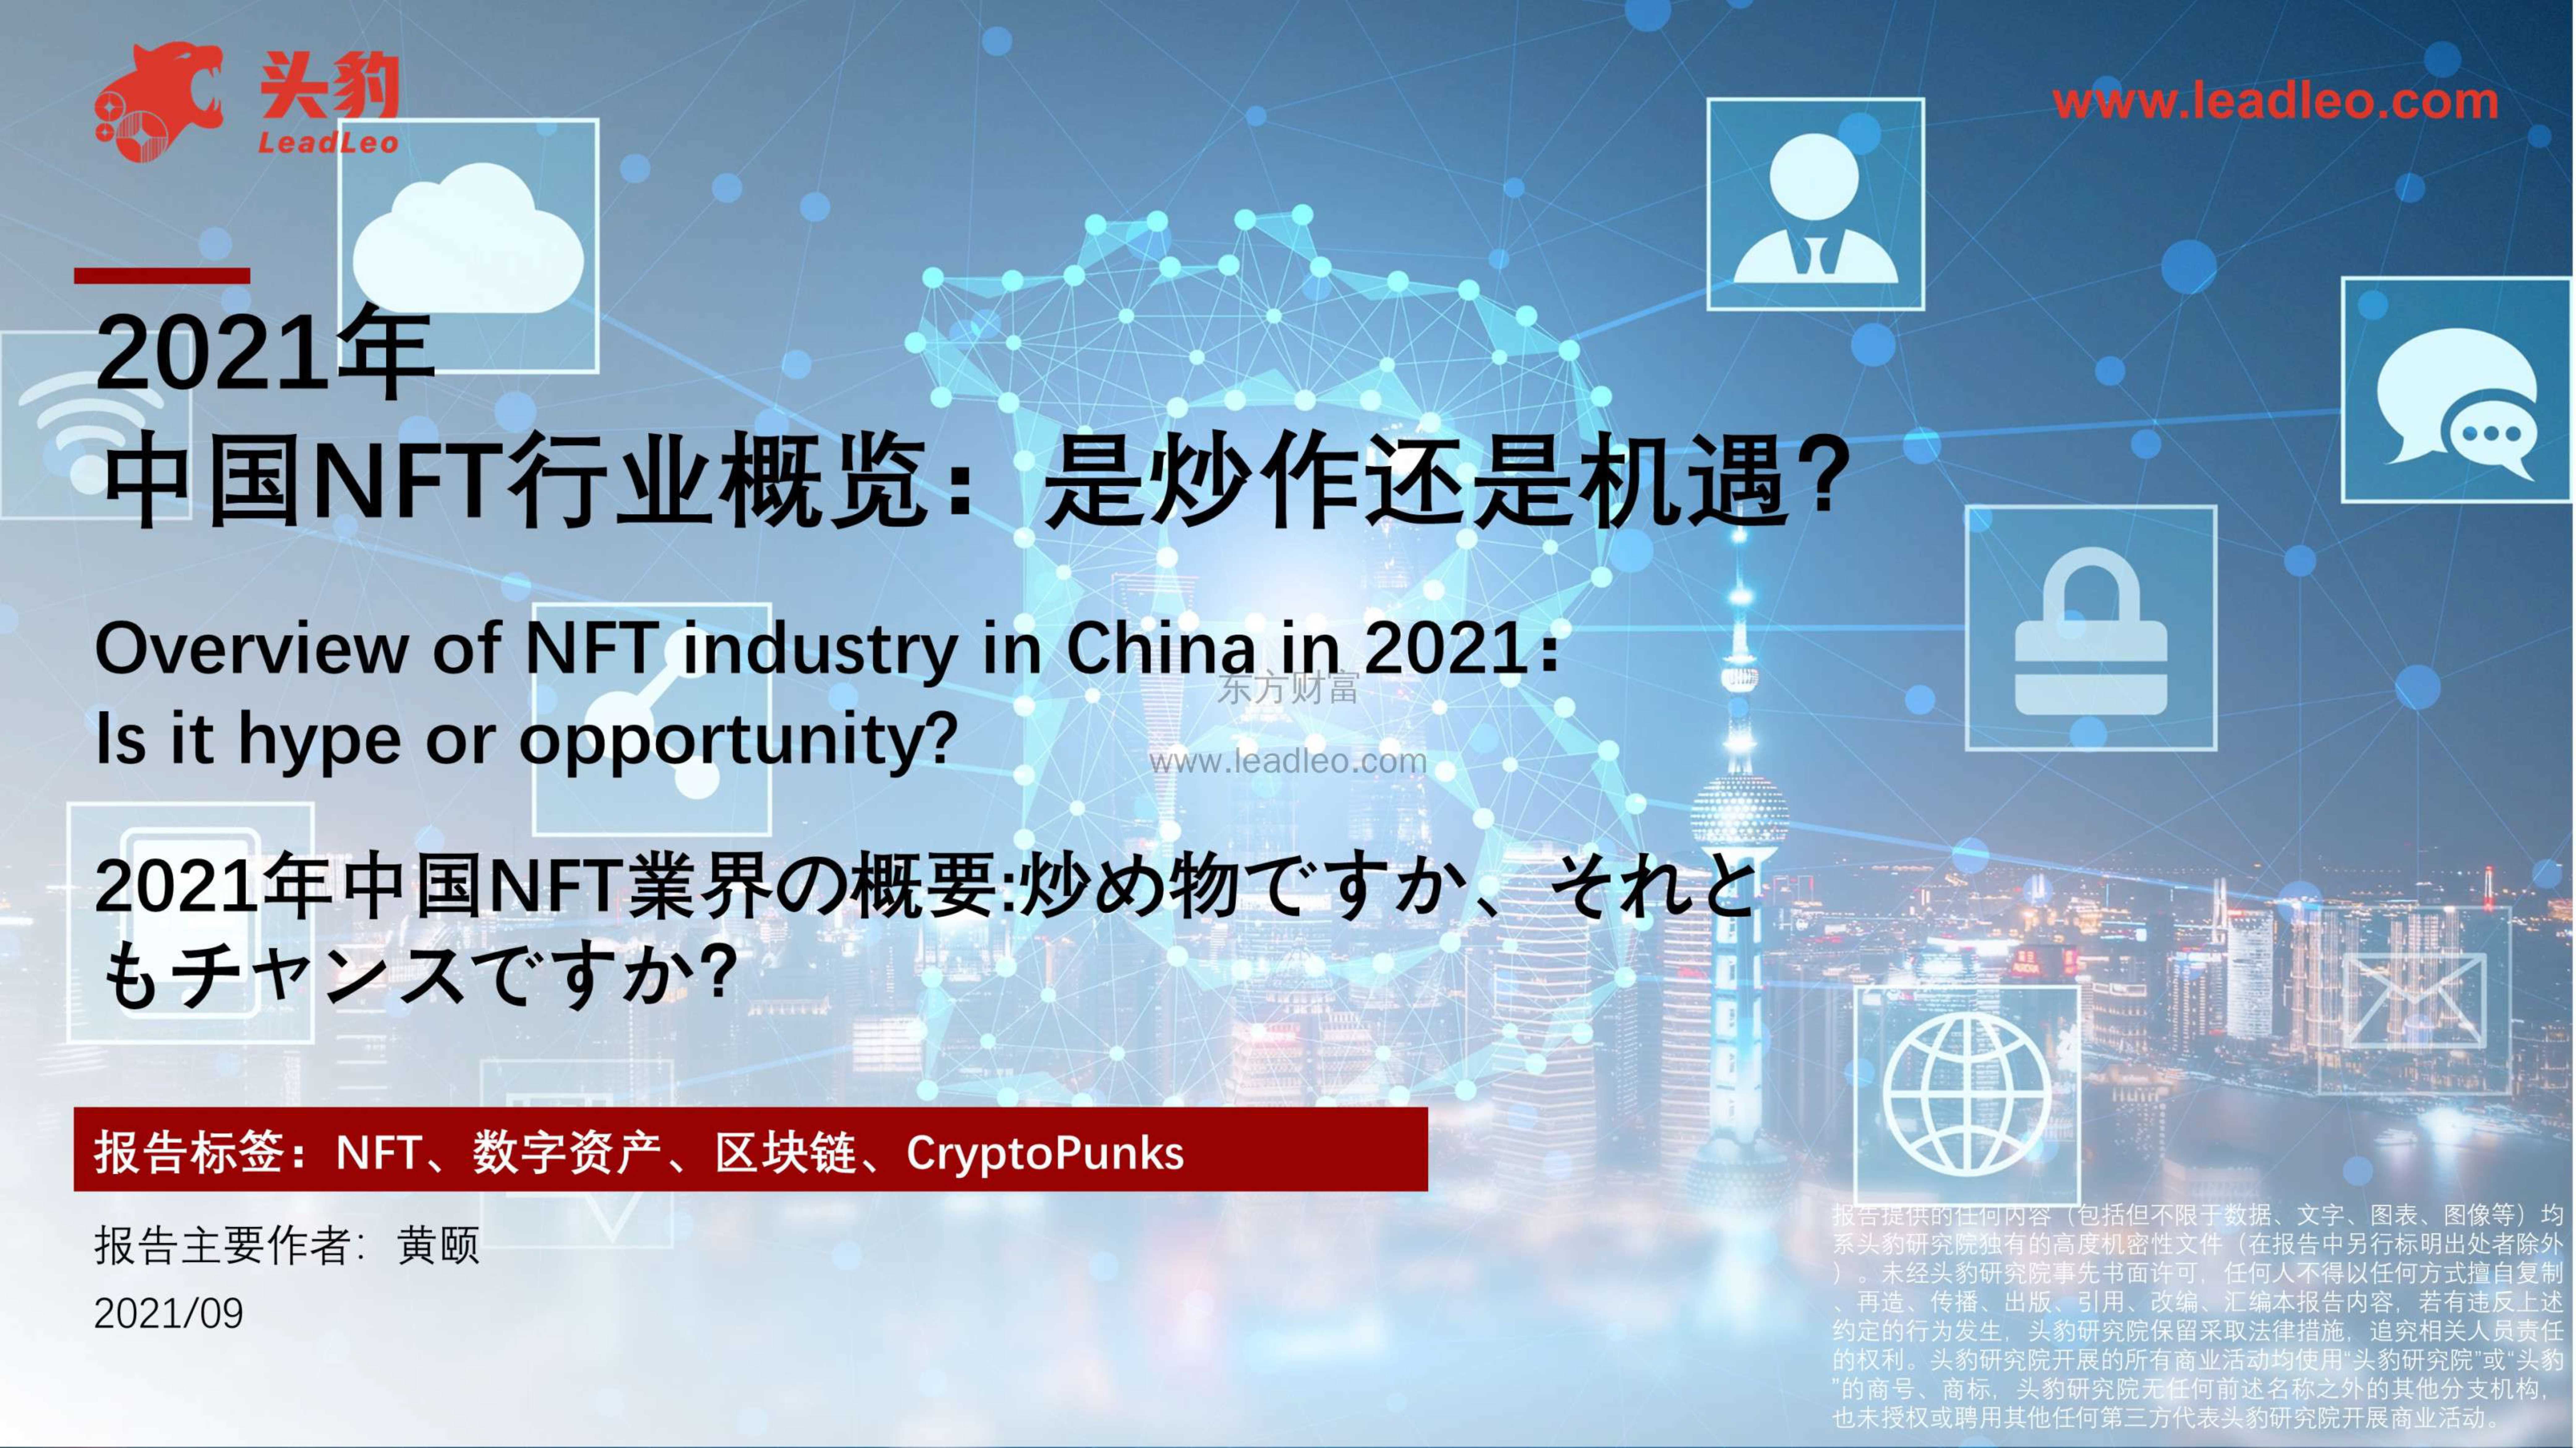 头豹研究院-2021年中国NFT行业概览：是炒作还是机遇？-2021.12-39页